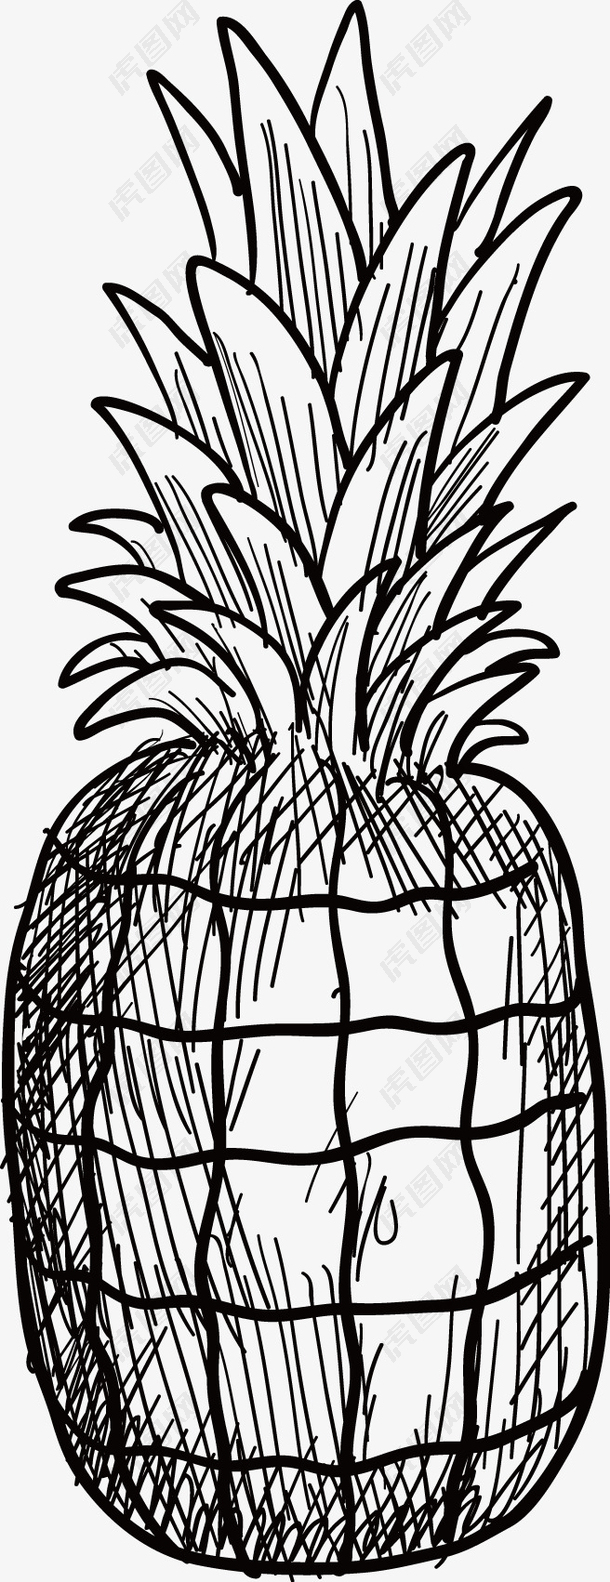 菠萝手绘矢量图